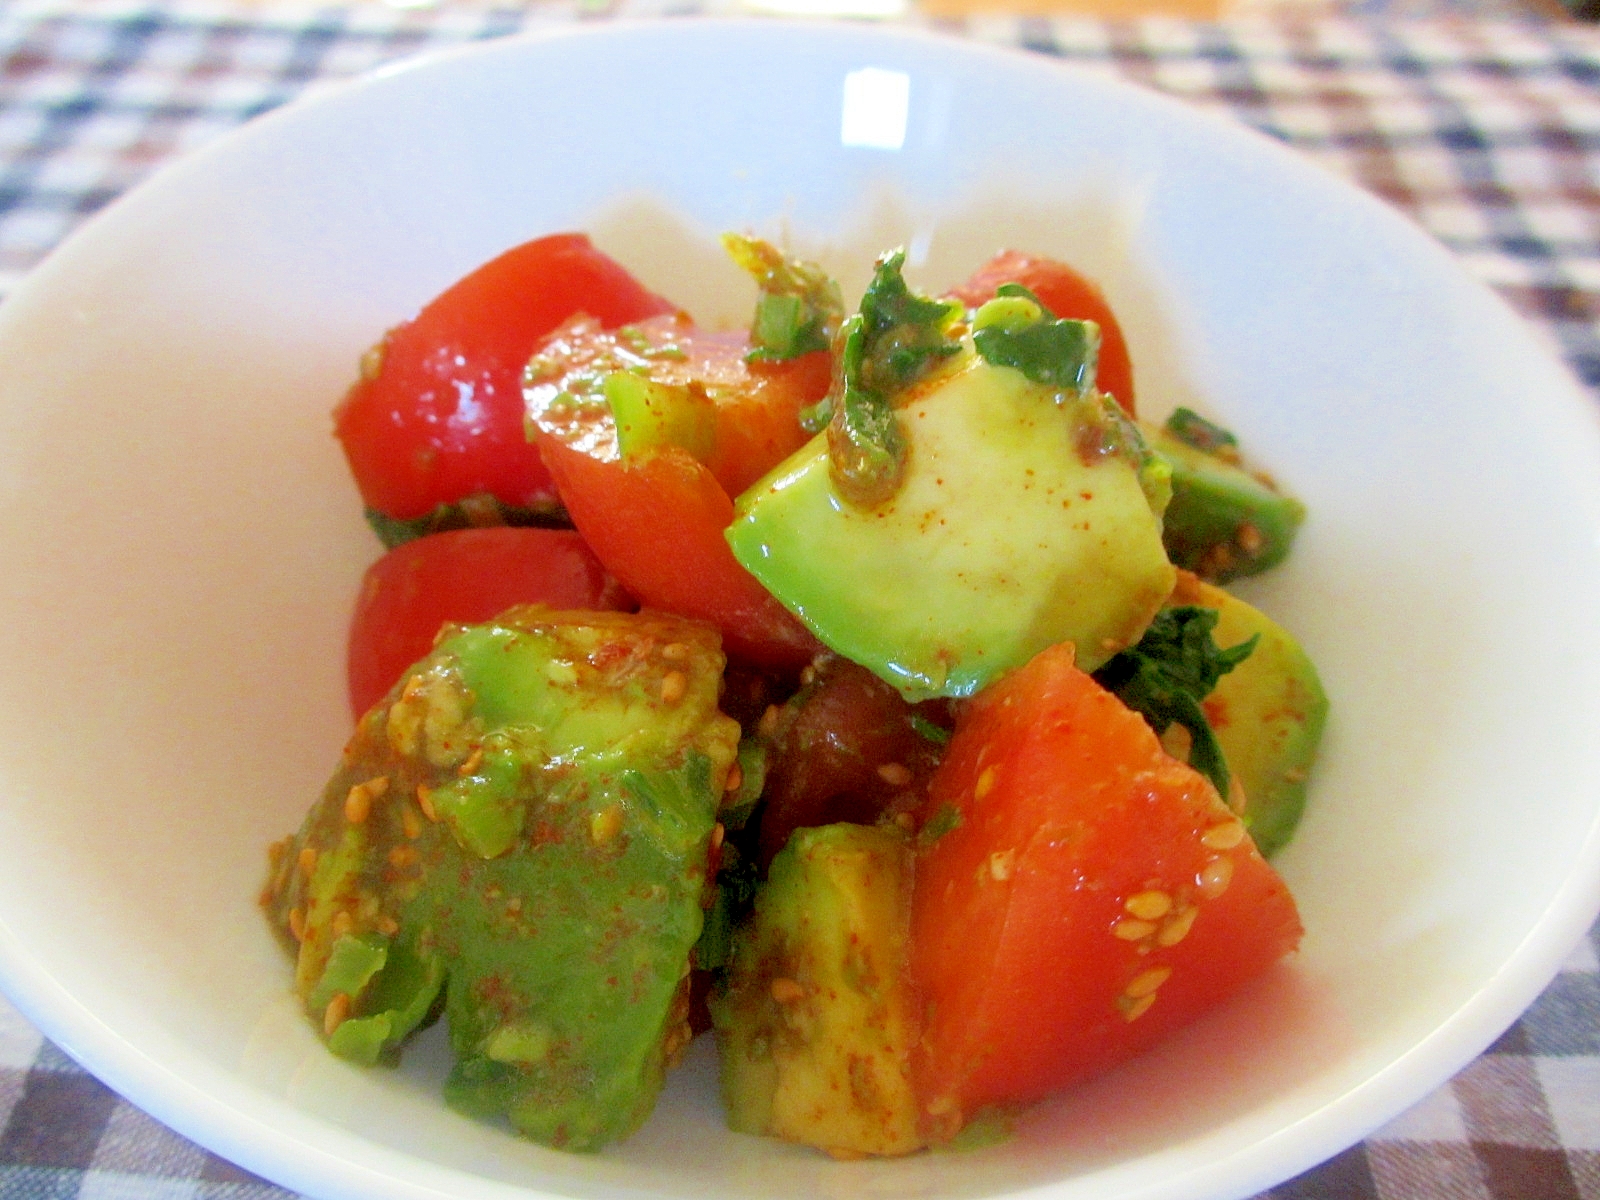 アボカド、トマト、小松菜のピリ辛ナムル